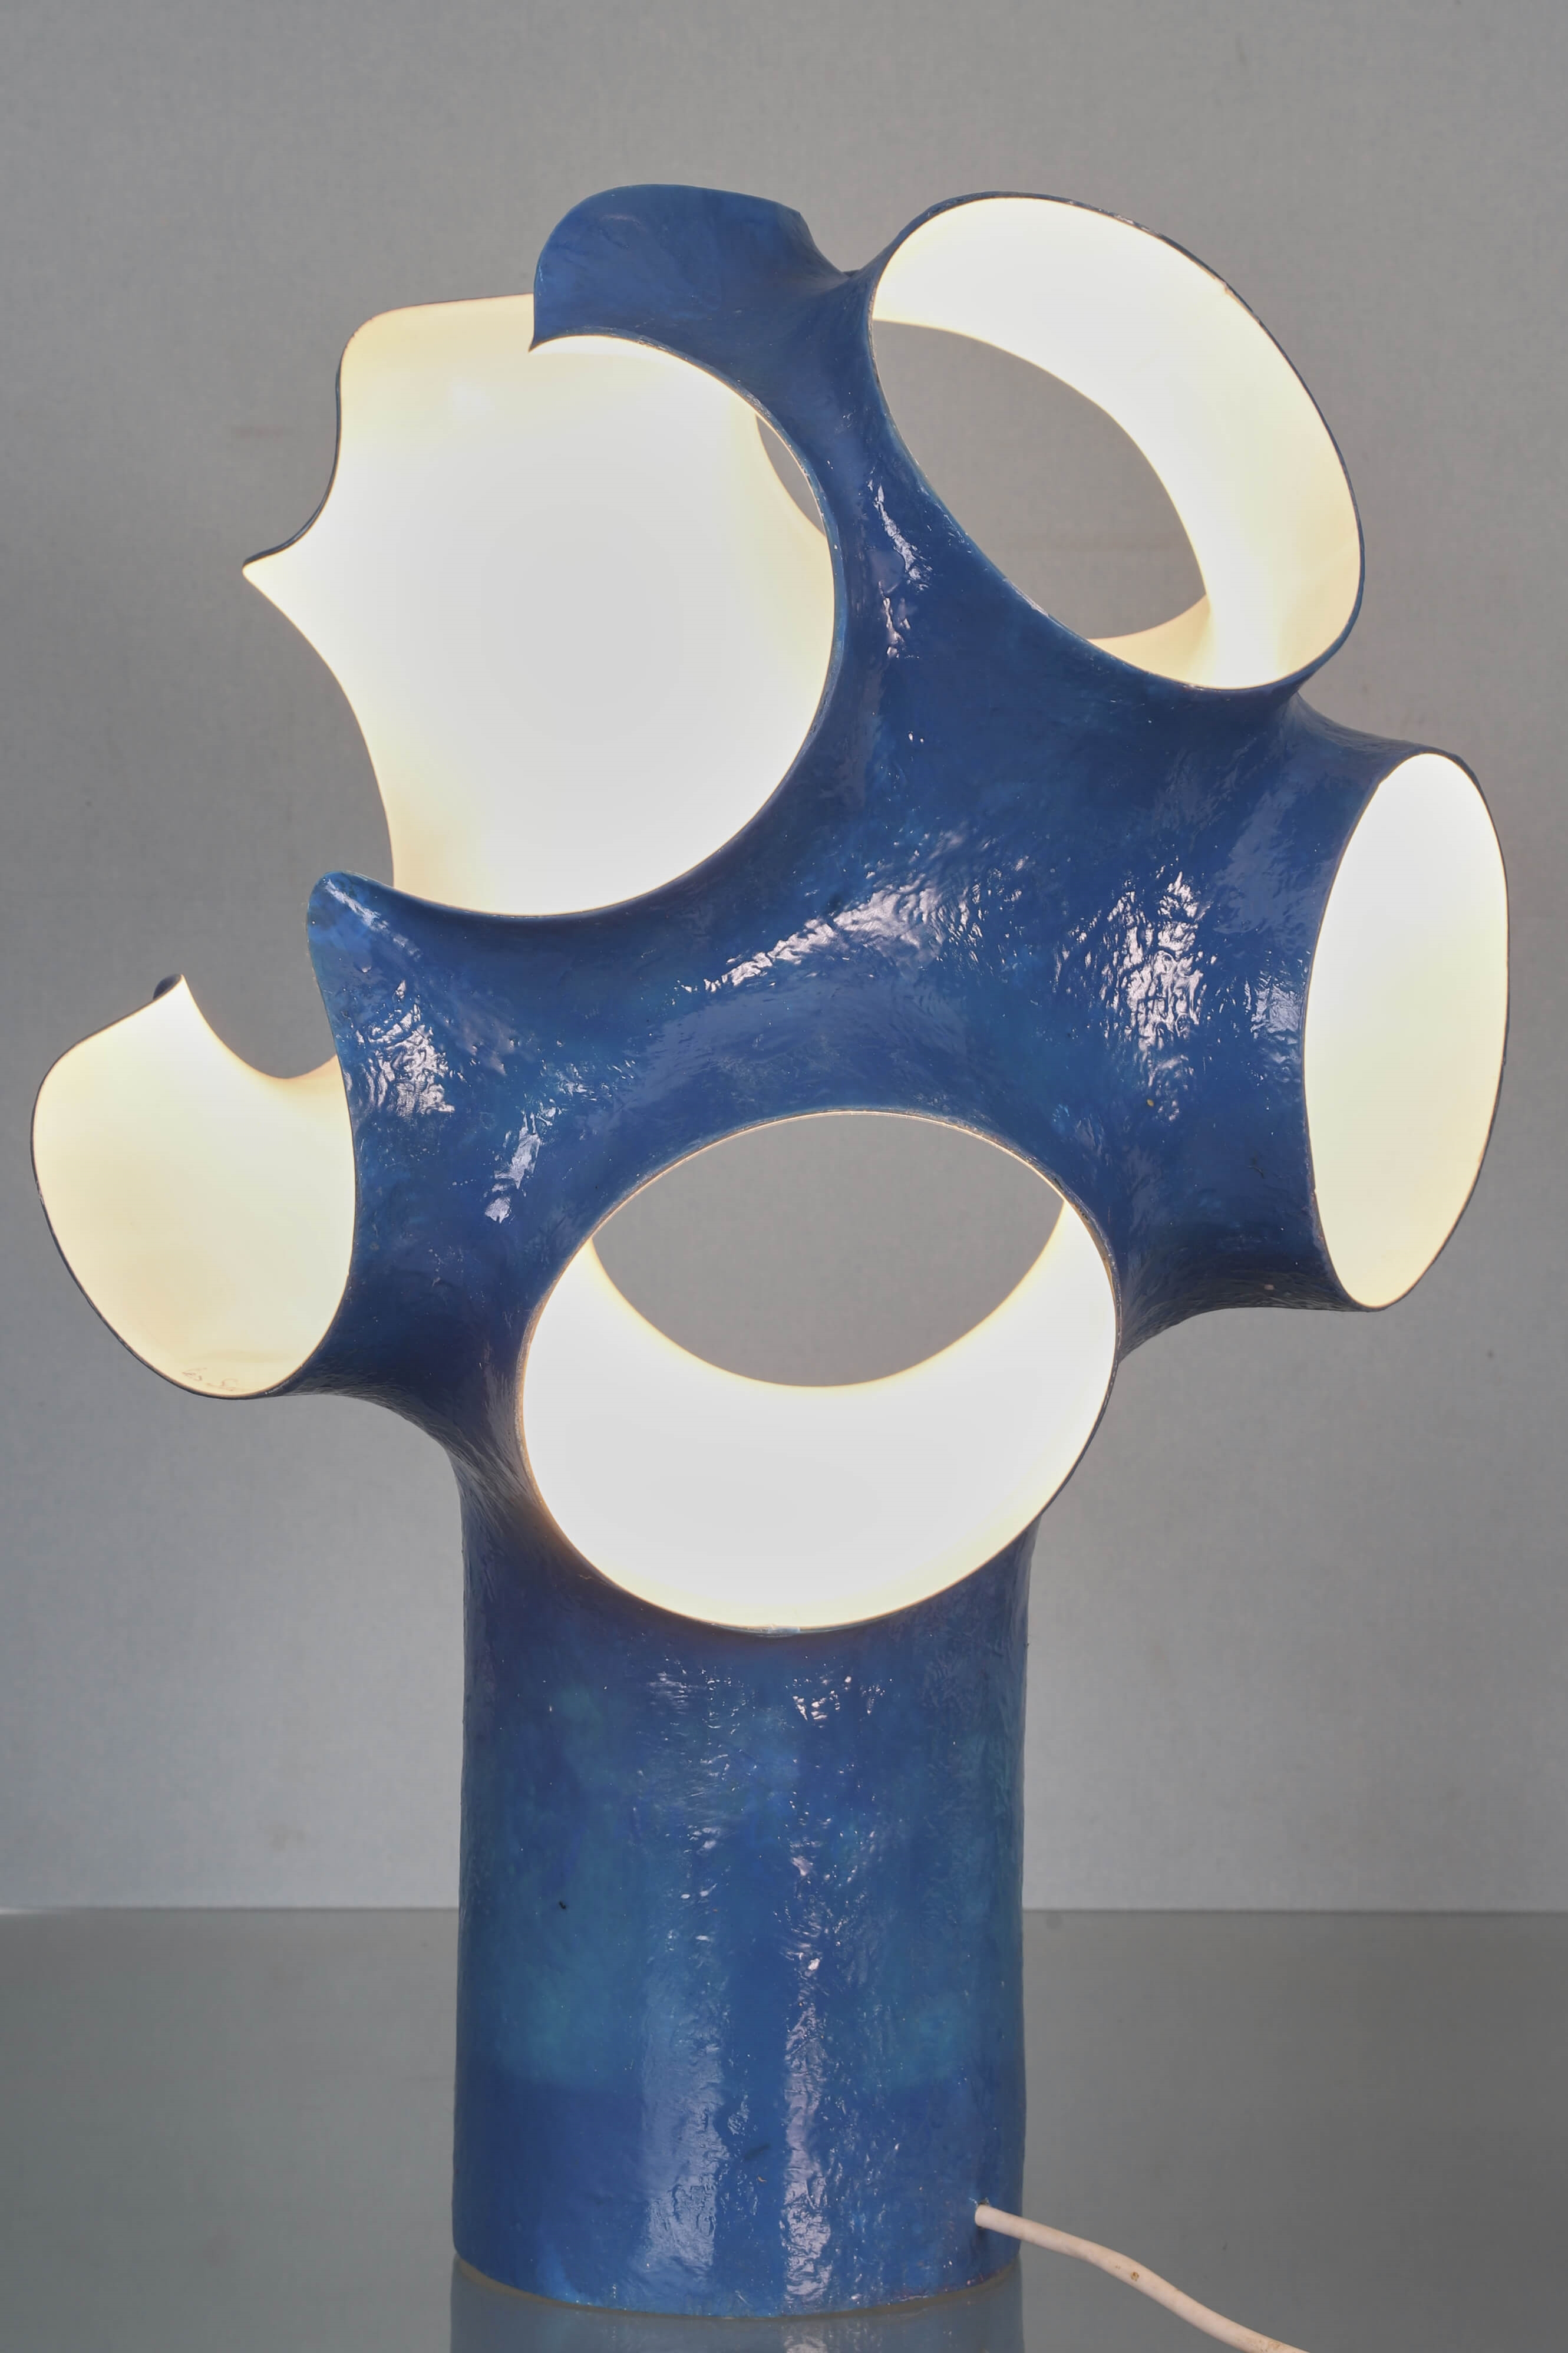 Tischuhr mit Lampe by Mofem on artnet